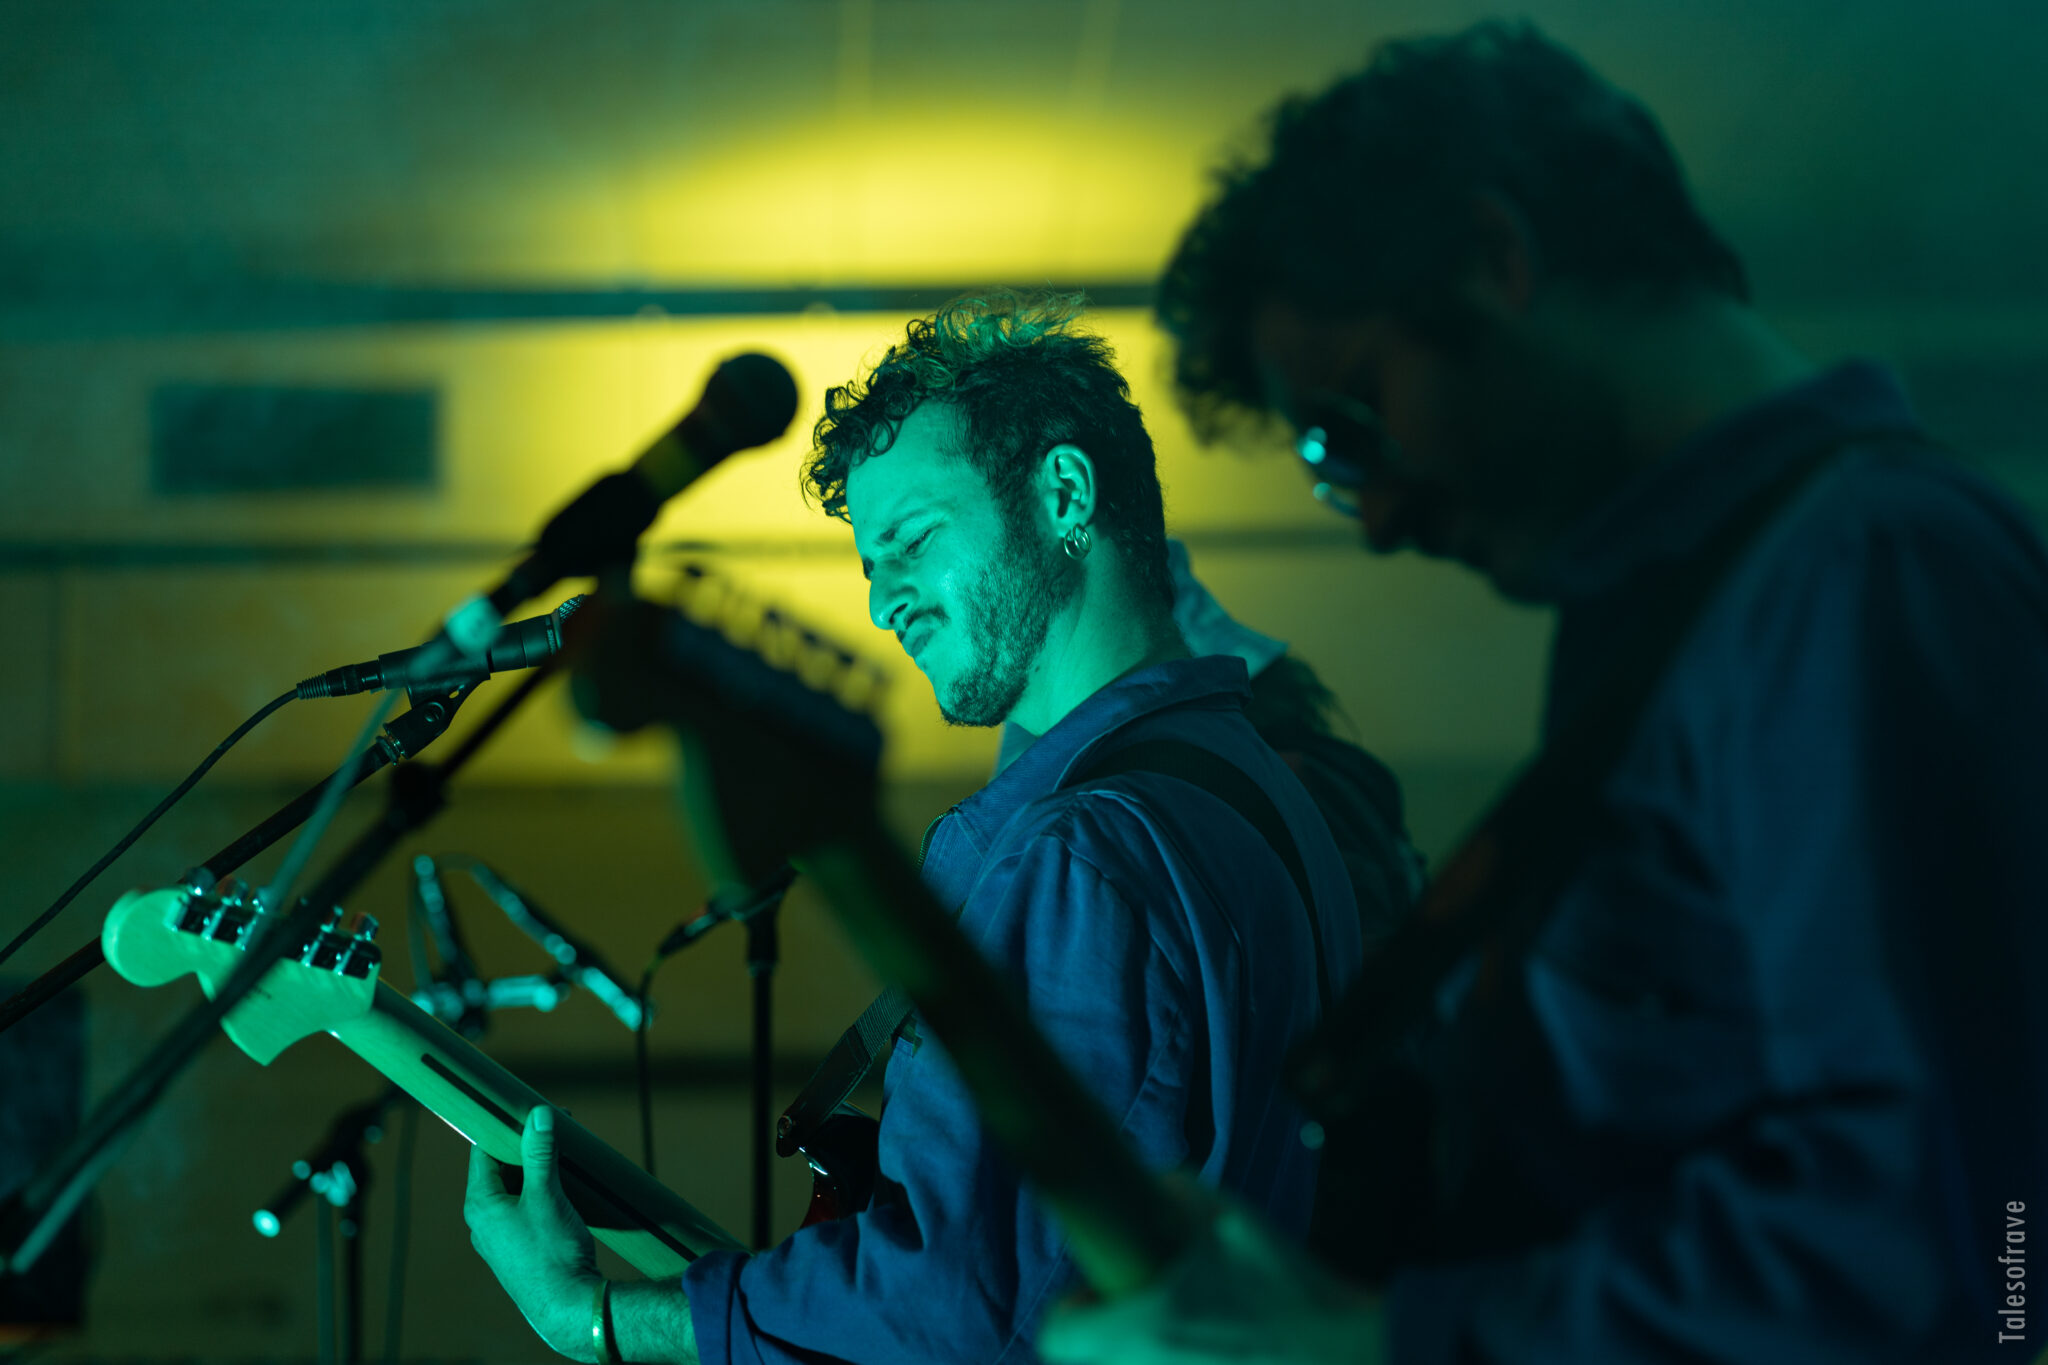 Plan de profil de deux guitaristes sur scène, visage marqué par l'émotion de la musique, lumière vert bleutée